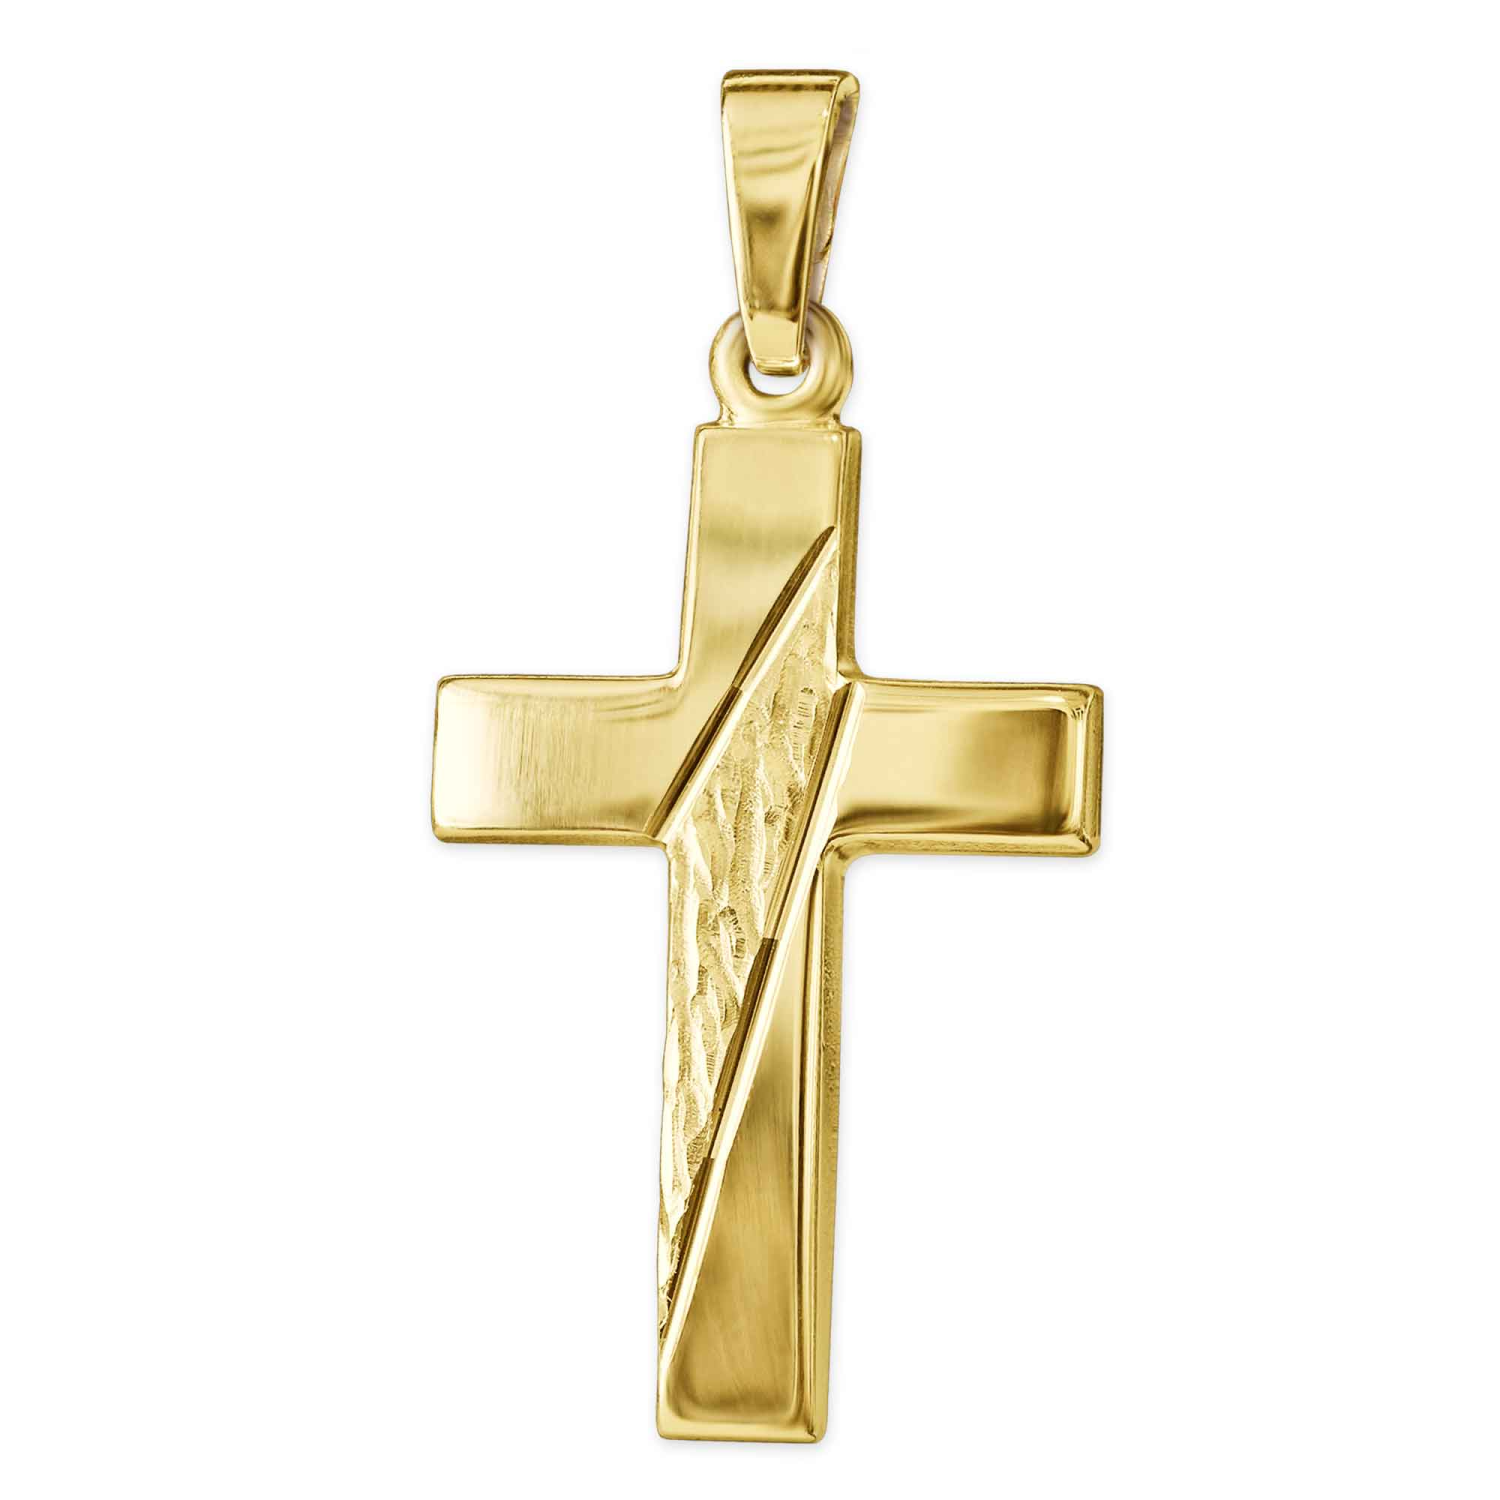 Goldener Anhänger Kreuz 21 mm quer gemustert und 2 Linien diamantiert glänzend 333 GOLD 8 KARAT